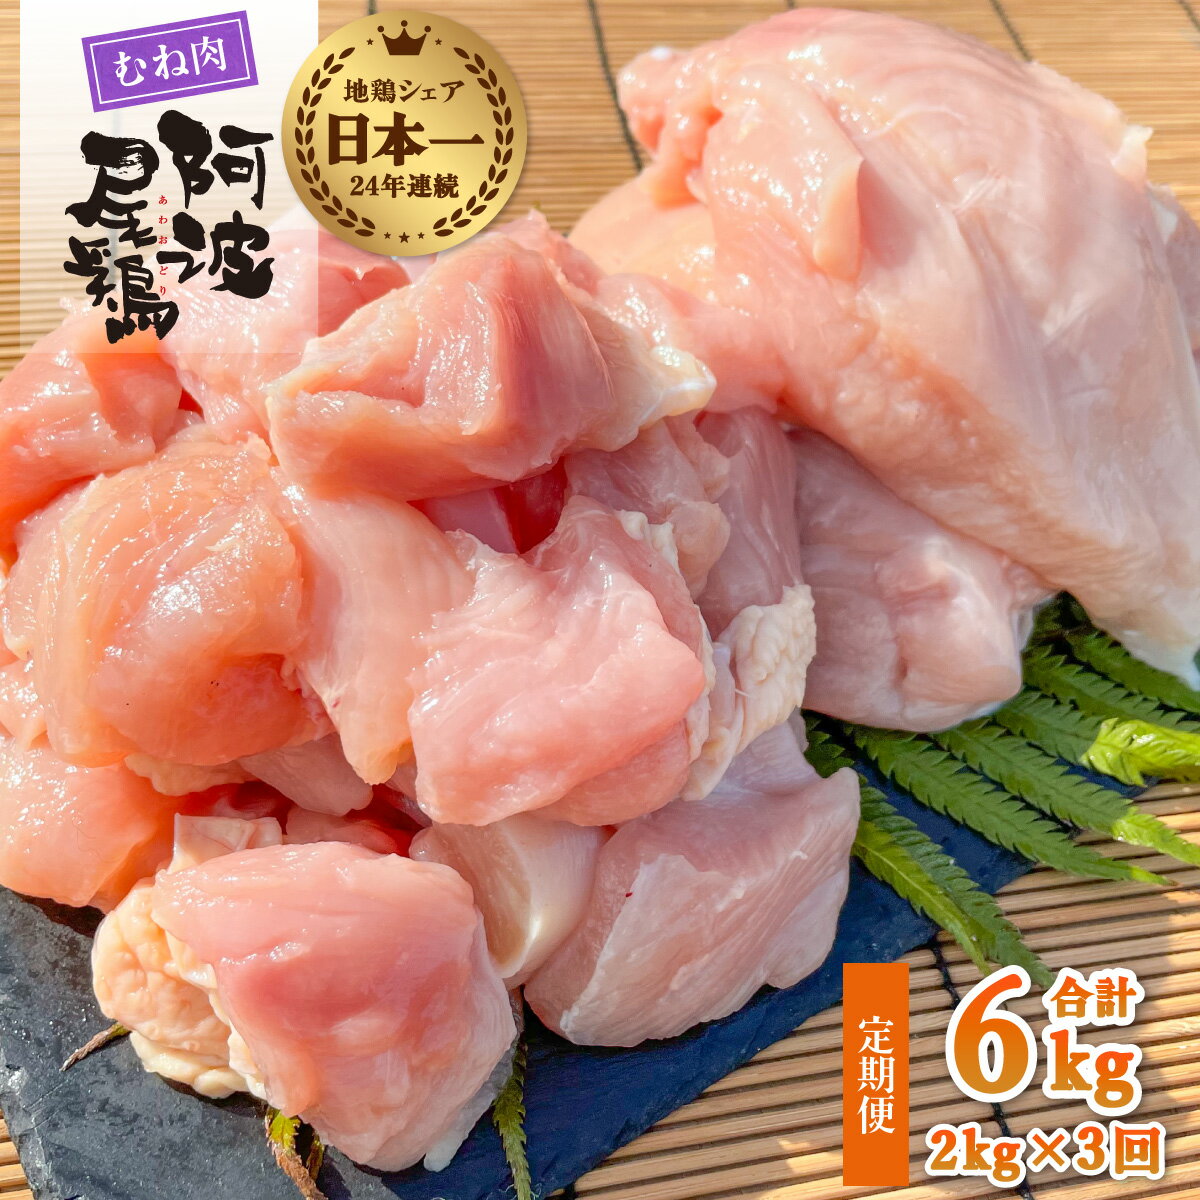 【ふるさと納税】 最高級 地鶏 むね肉 3ヶ月 定期便 国産 日本一 阿波尾鶏 小分け 約6kg (約2kg×3回) 冷凍 切り身 正肉 あわおどり